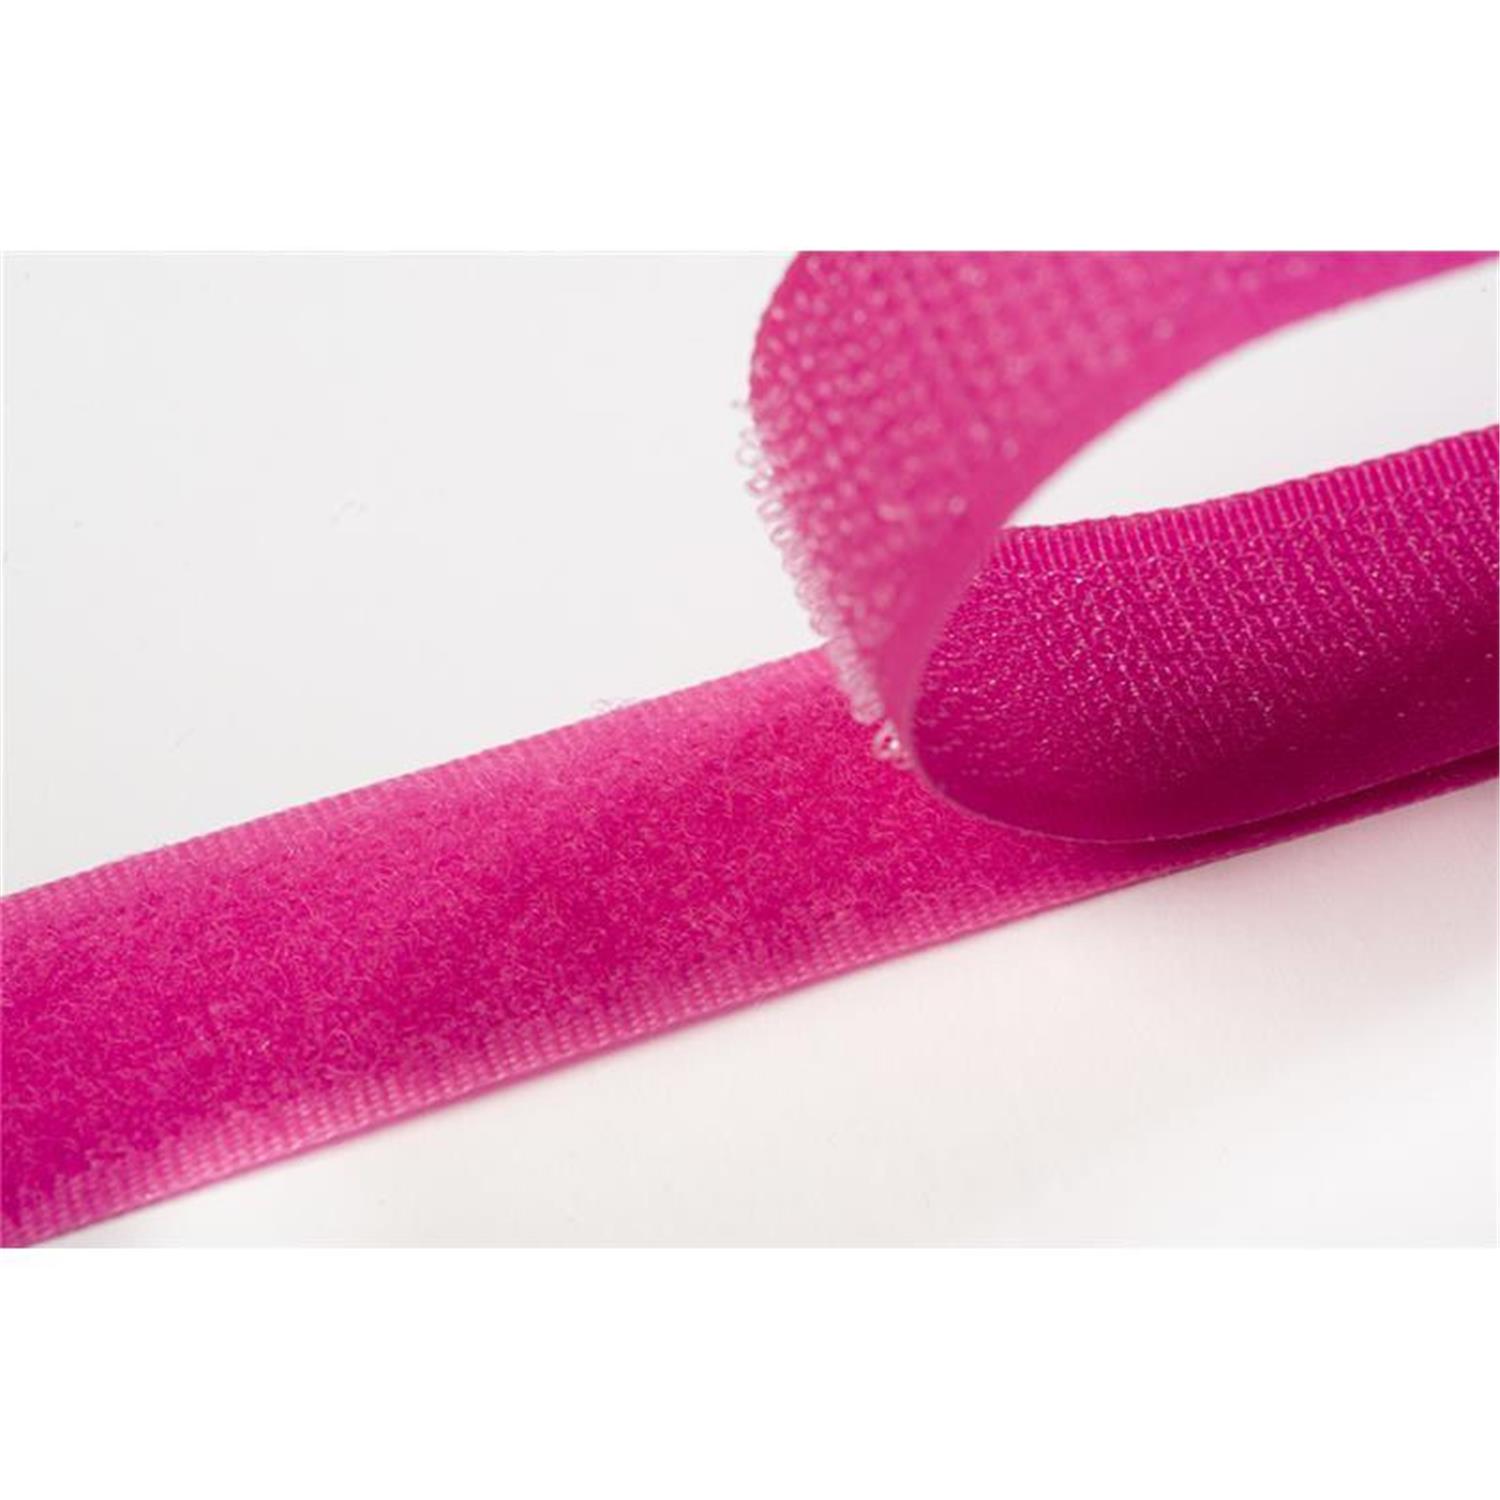 Klettband zum aufnähen, 20 mm, pink #09 4 Meter